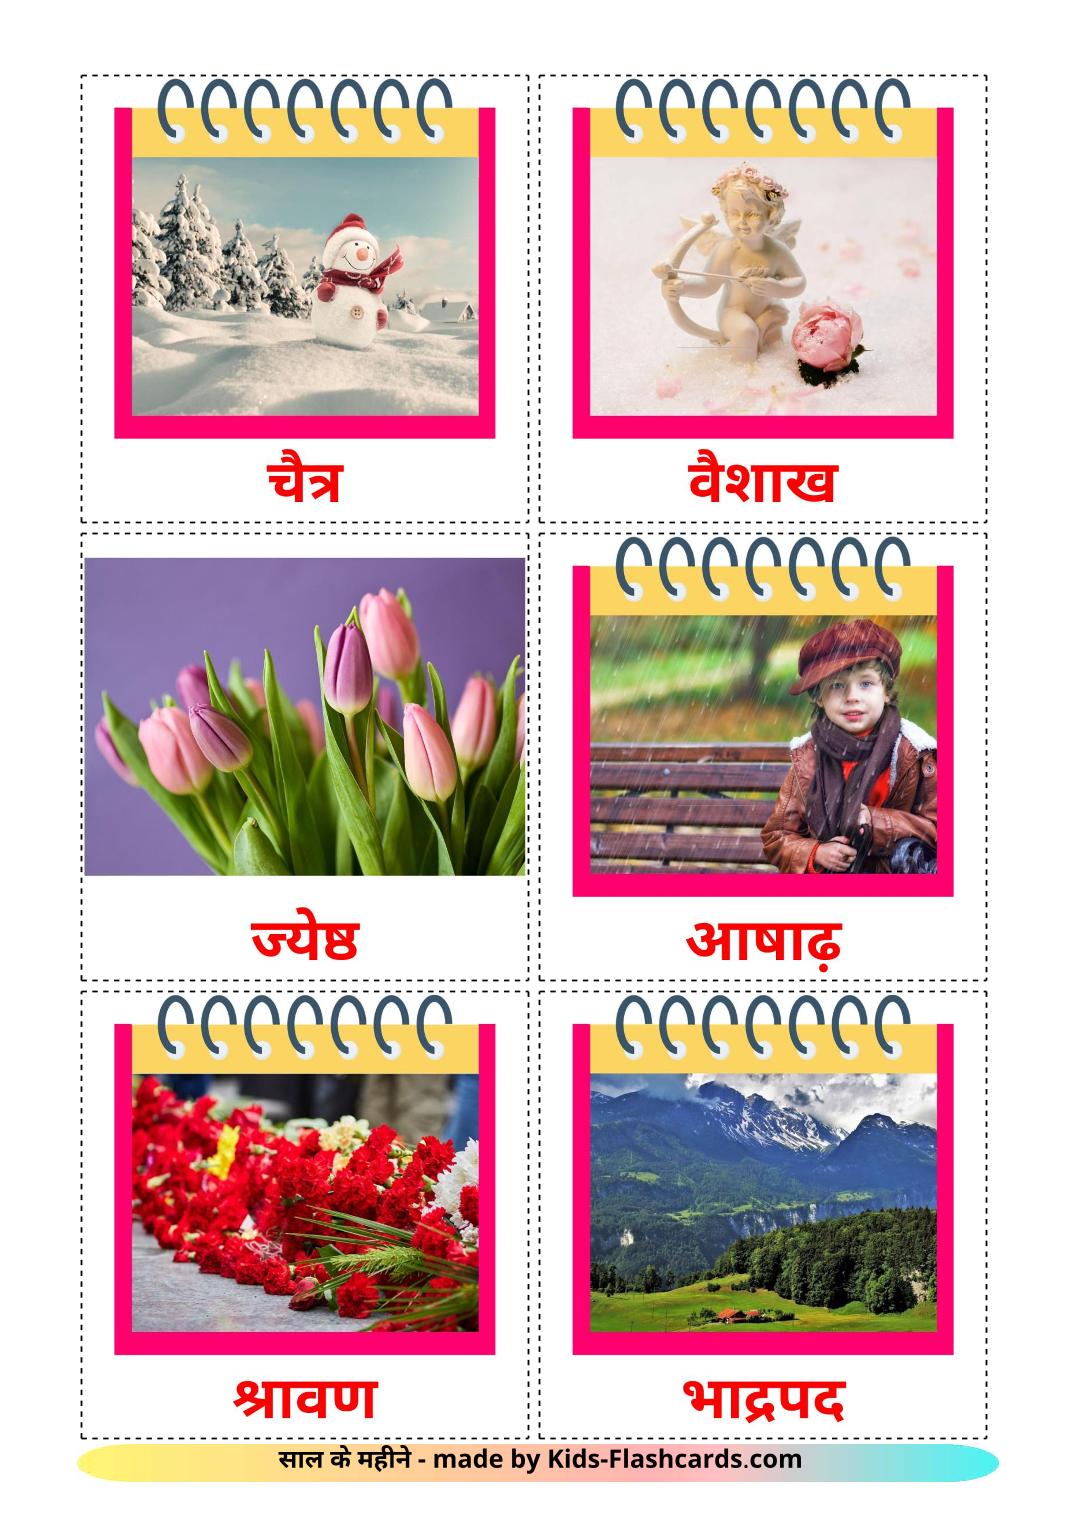 Les Mois de l'année - 12 Flashcards hindi imprimables gratuitement